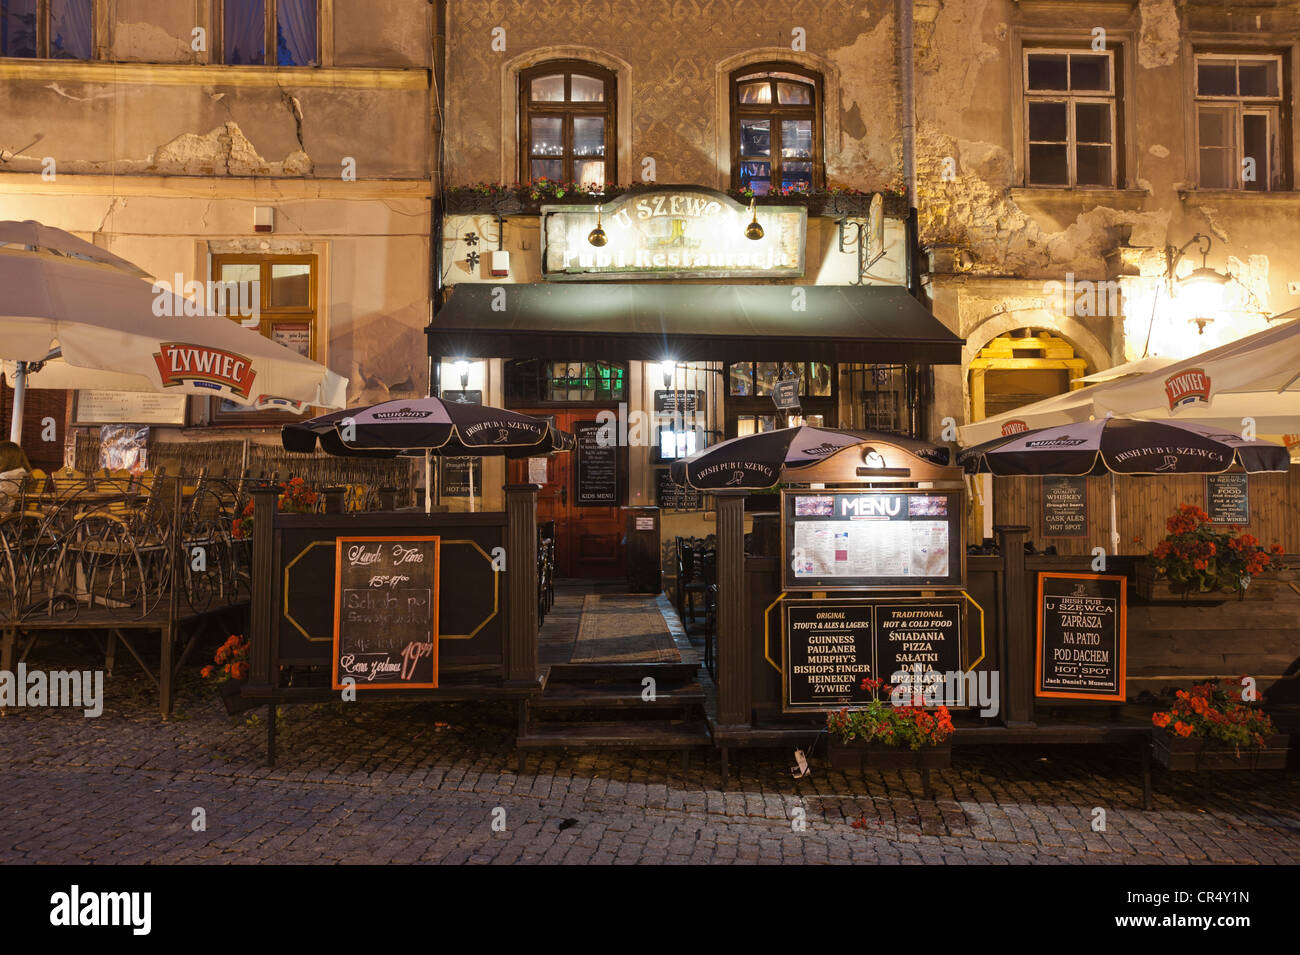 Pub, restaurant, Lublin, Lublin province, Poland Stock Photo